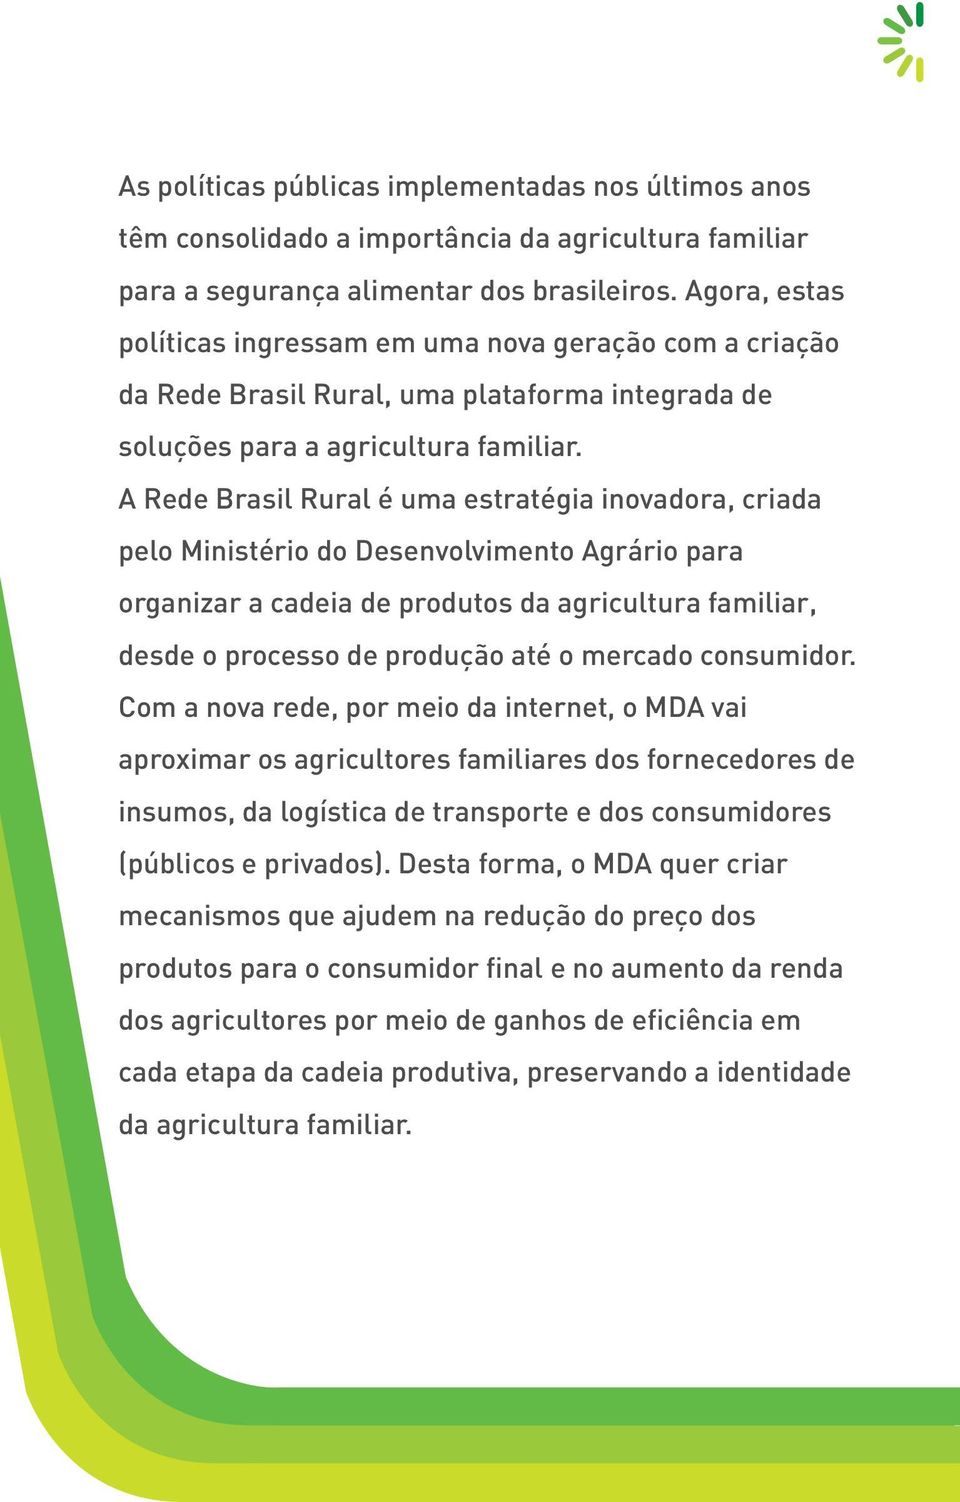 A Rede Brasil Rural é uma estratégia inovadora, criada pelo Ministério do Desenvolvimento Agrário para organizar a cadeia de produtos da agricultura familiar, desde o processo de produção até o